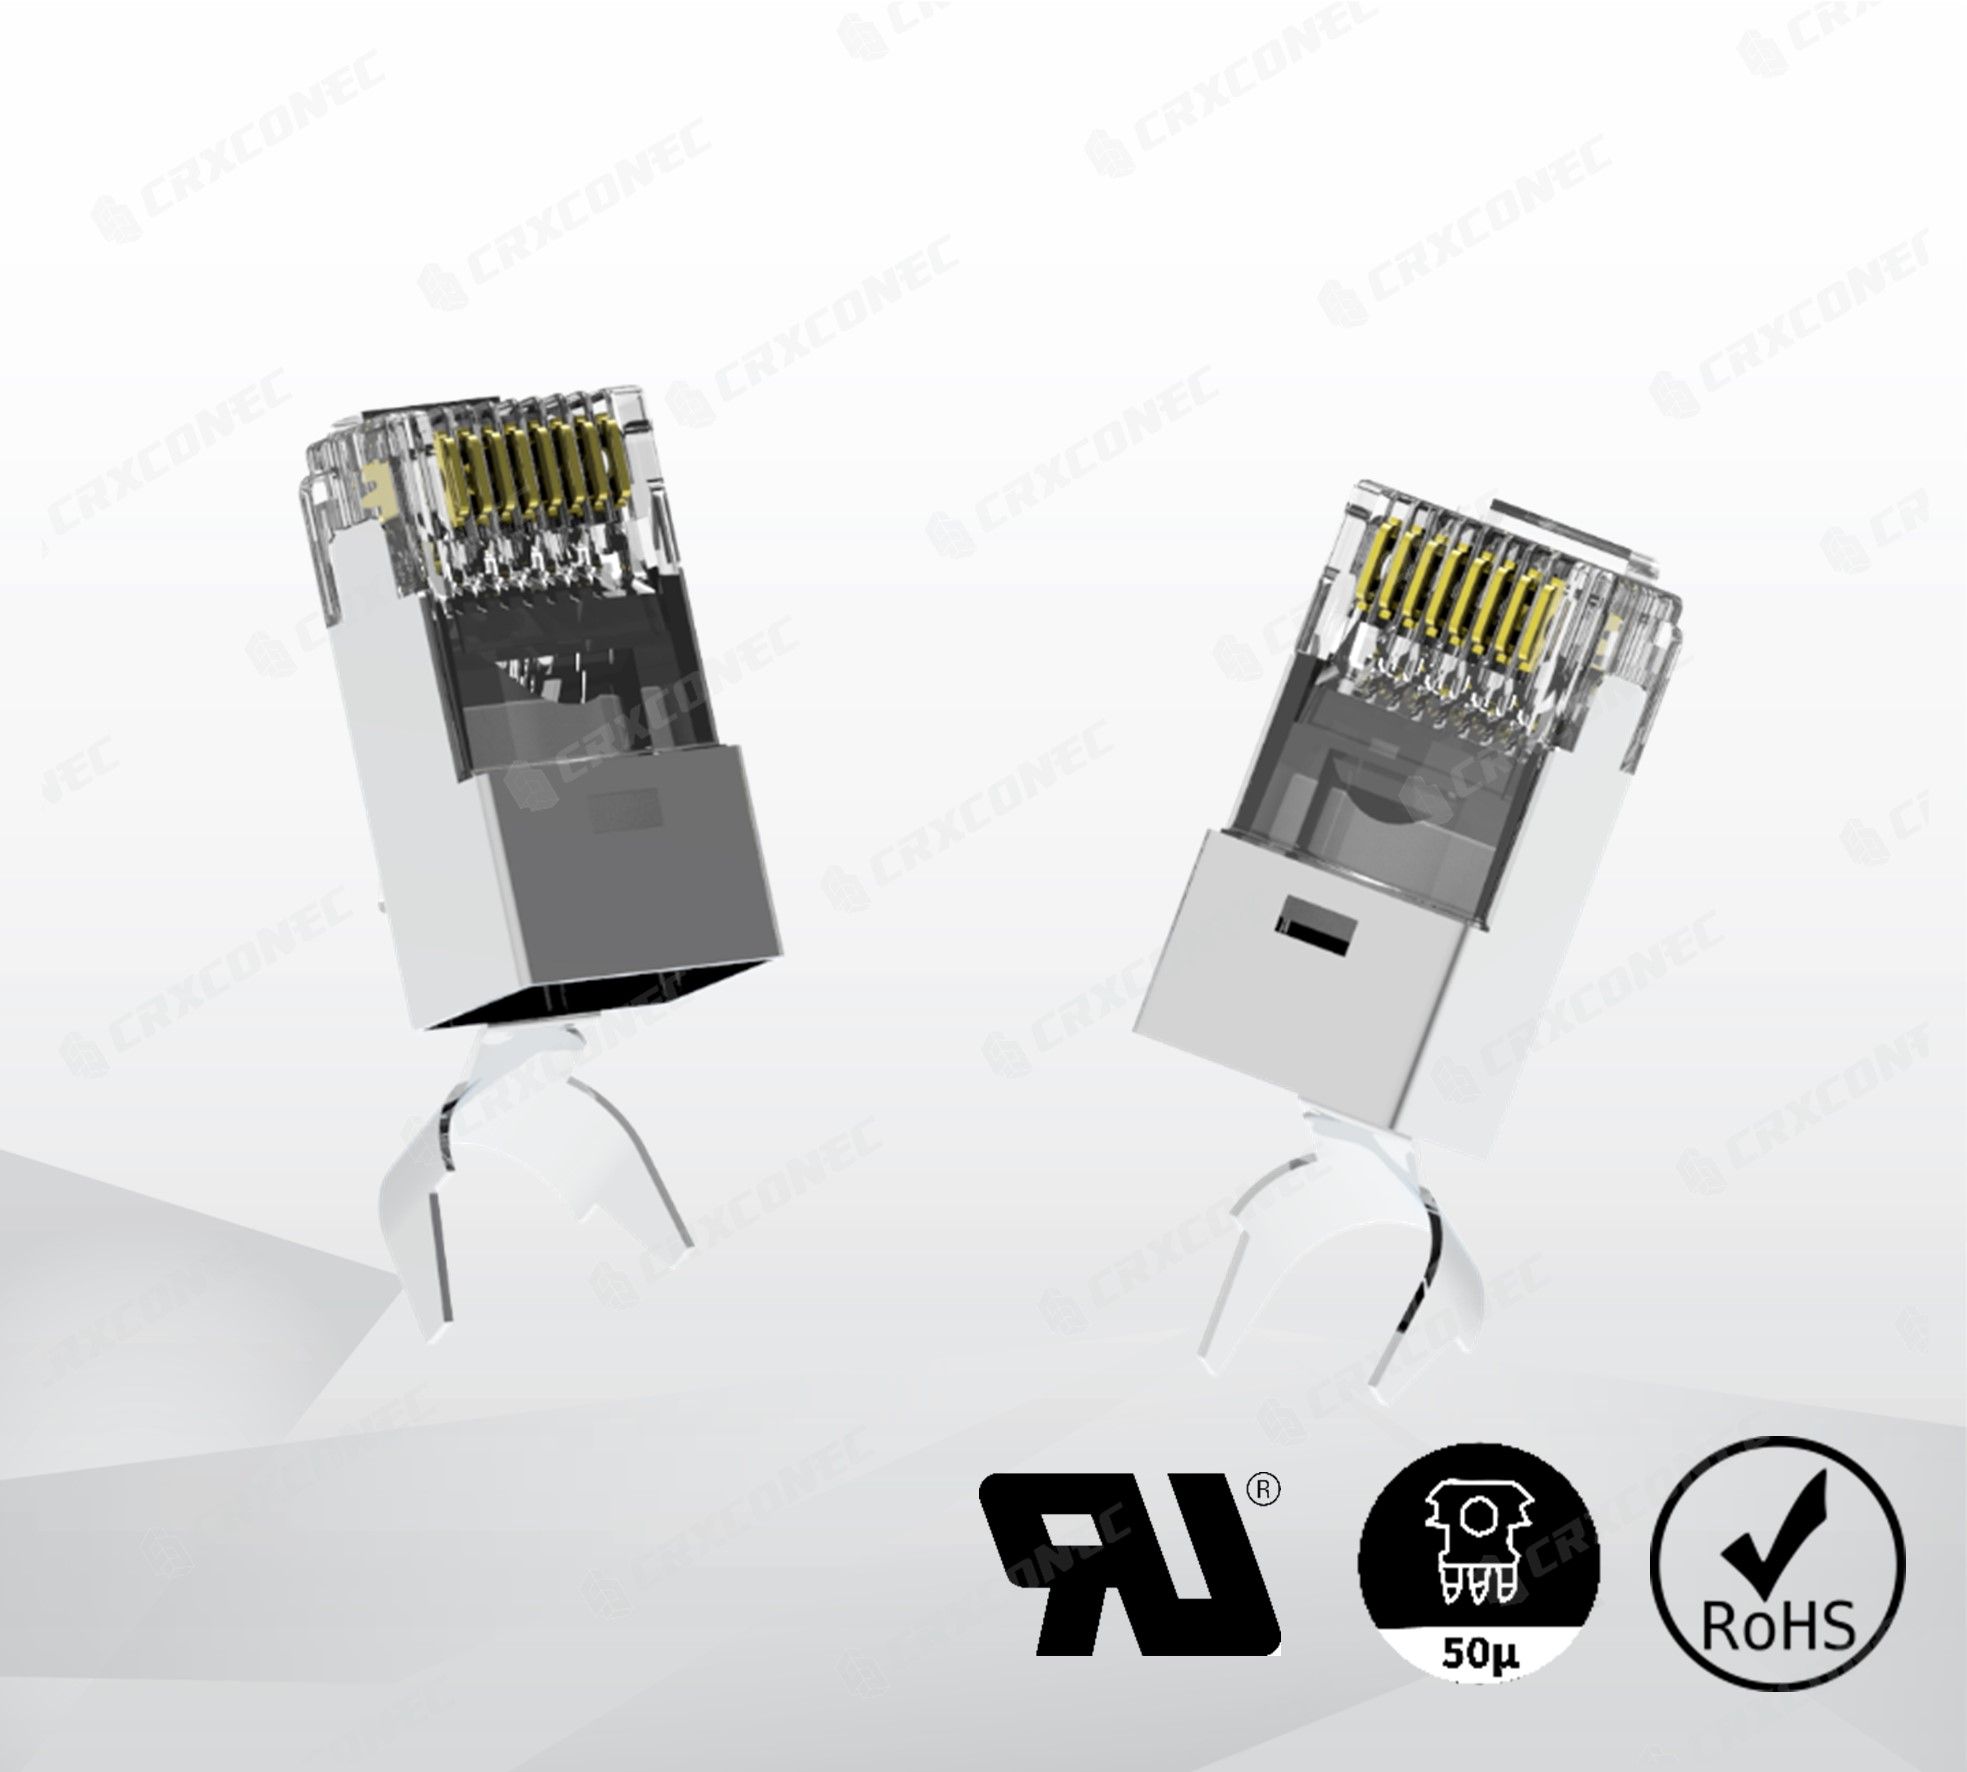 Herramienta de crimpado RJ45 para conectores de paso RJ45, Tecnologías  avanzadas de fibra óptica: Elevando la conectividad moderna